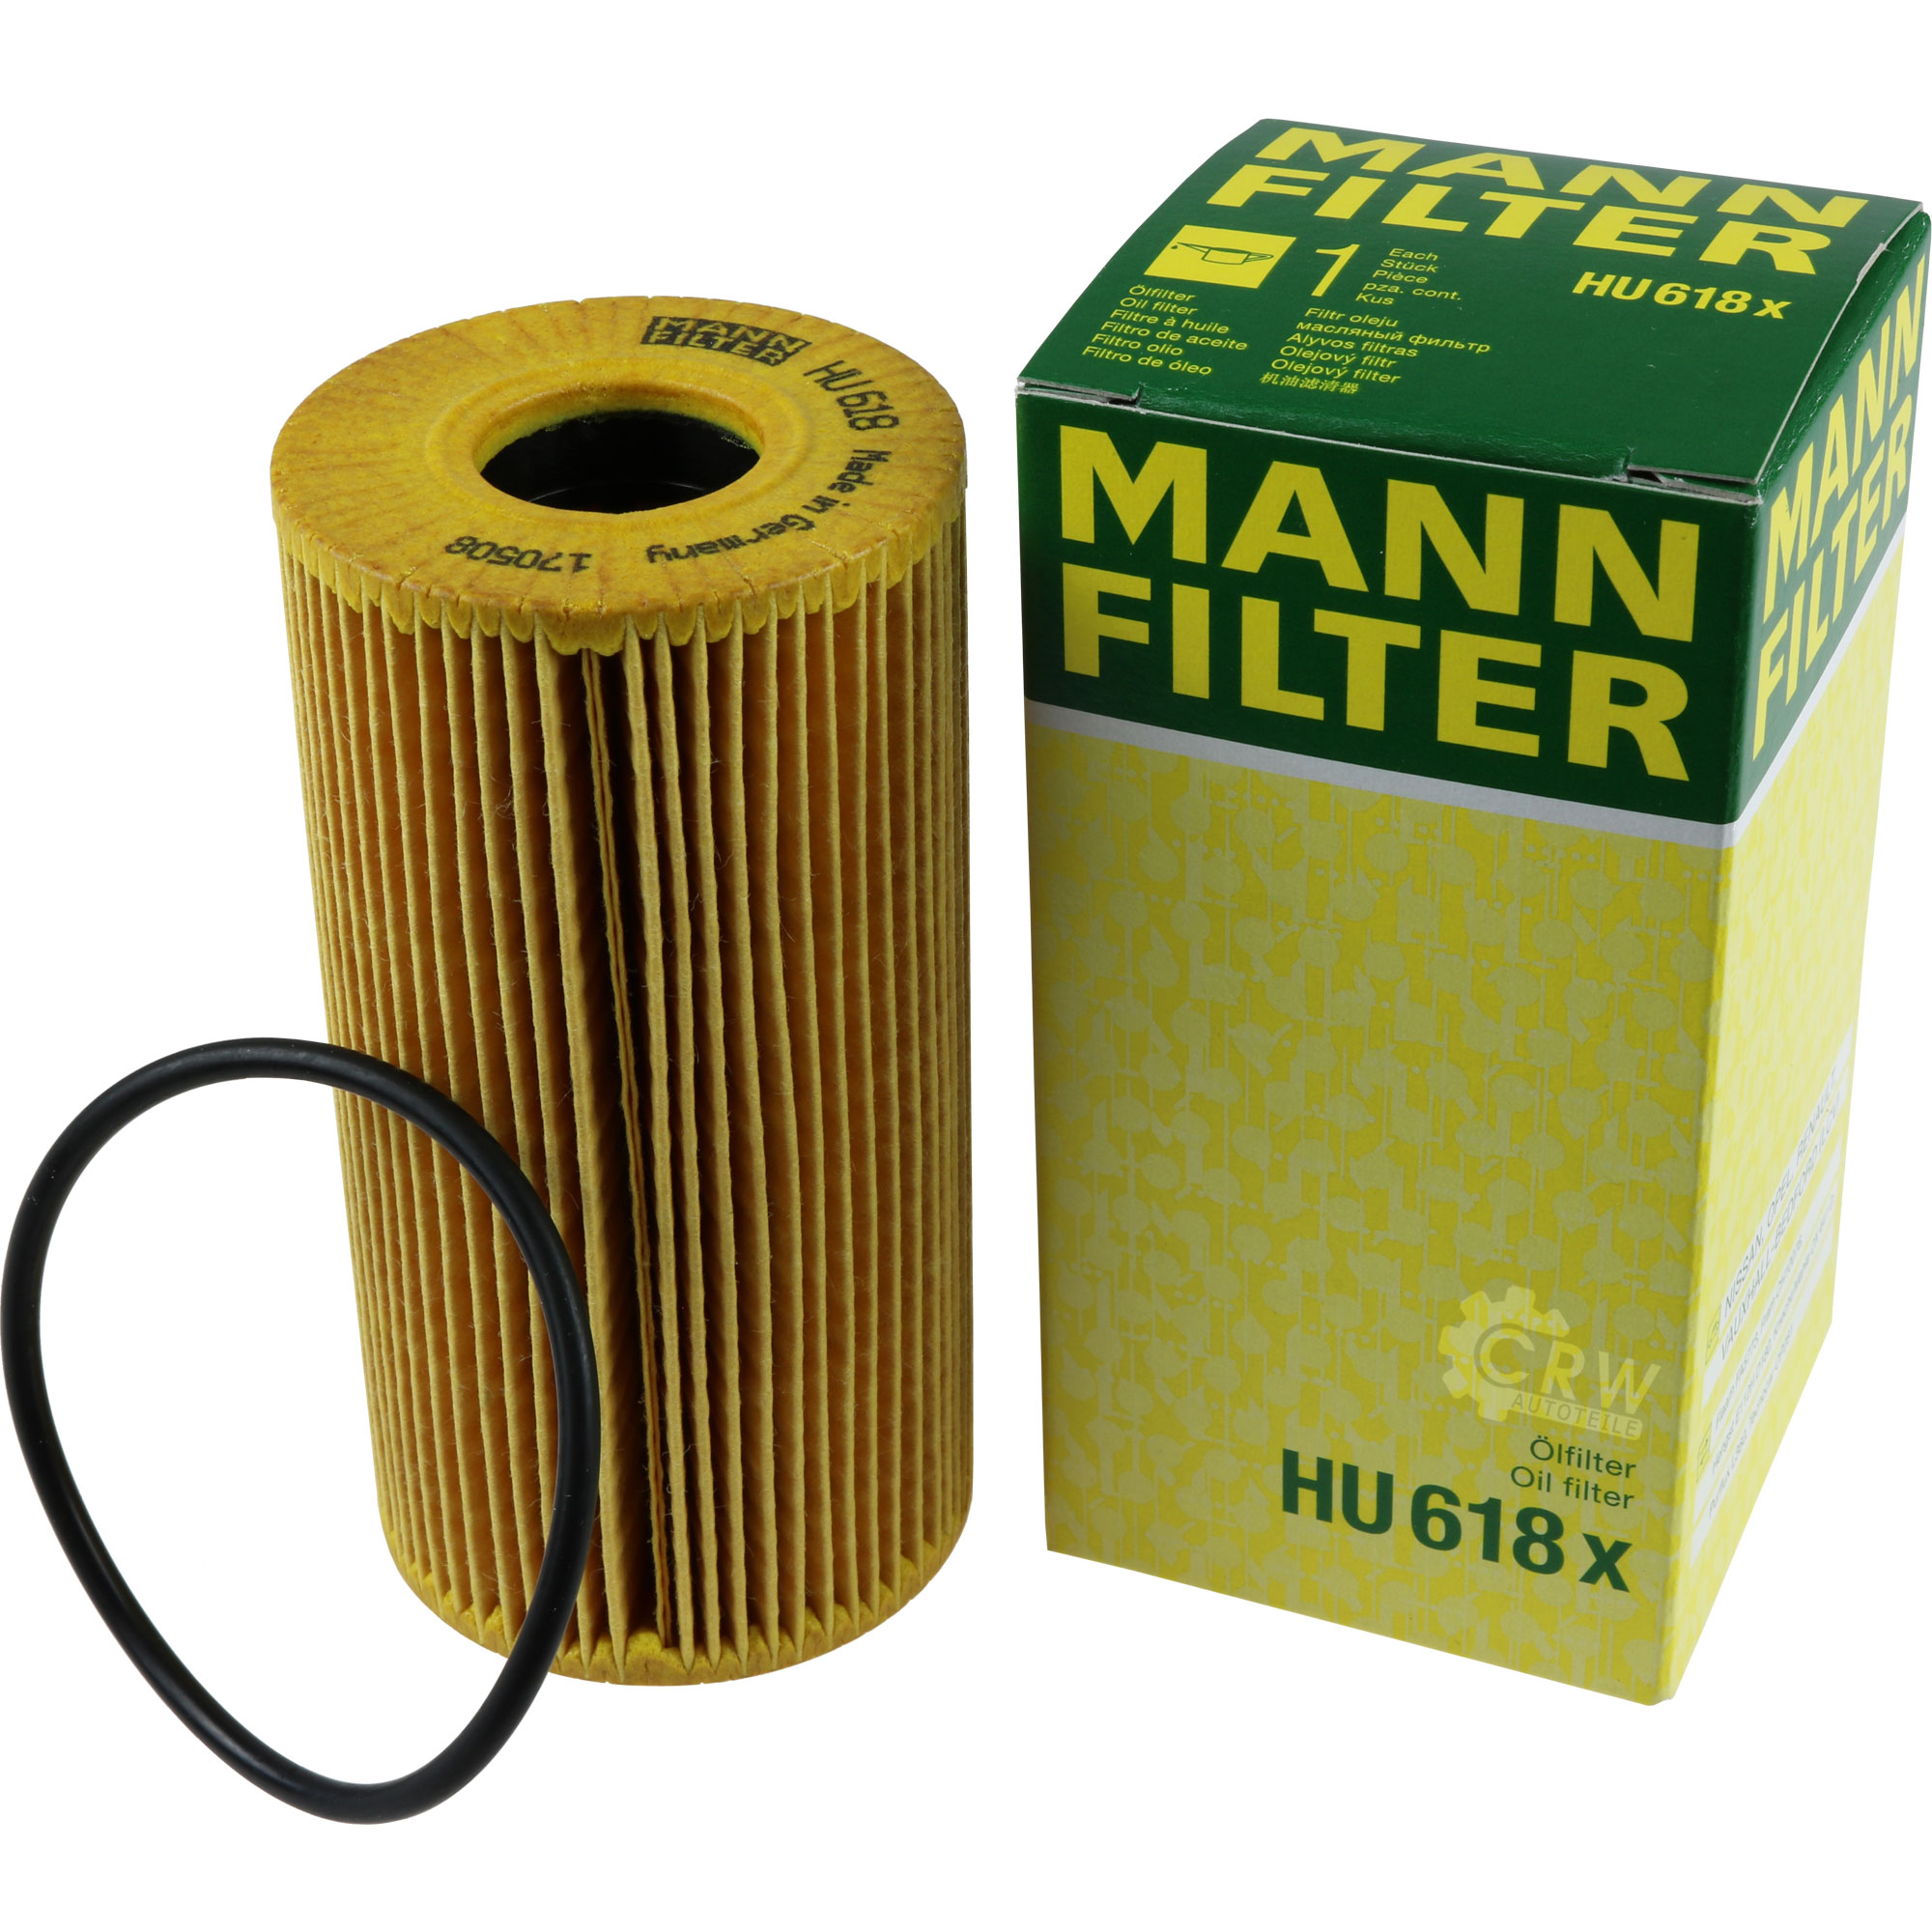 MANN-FILTER Ölfilter HU 618 x Oil Filter